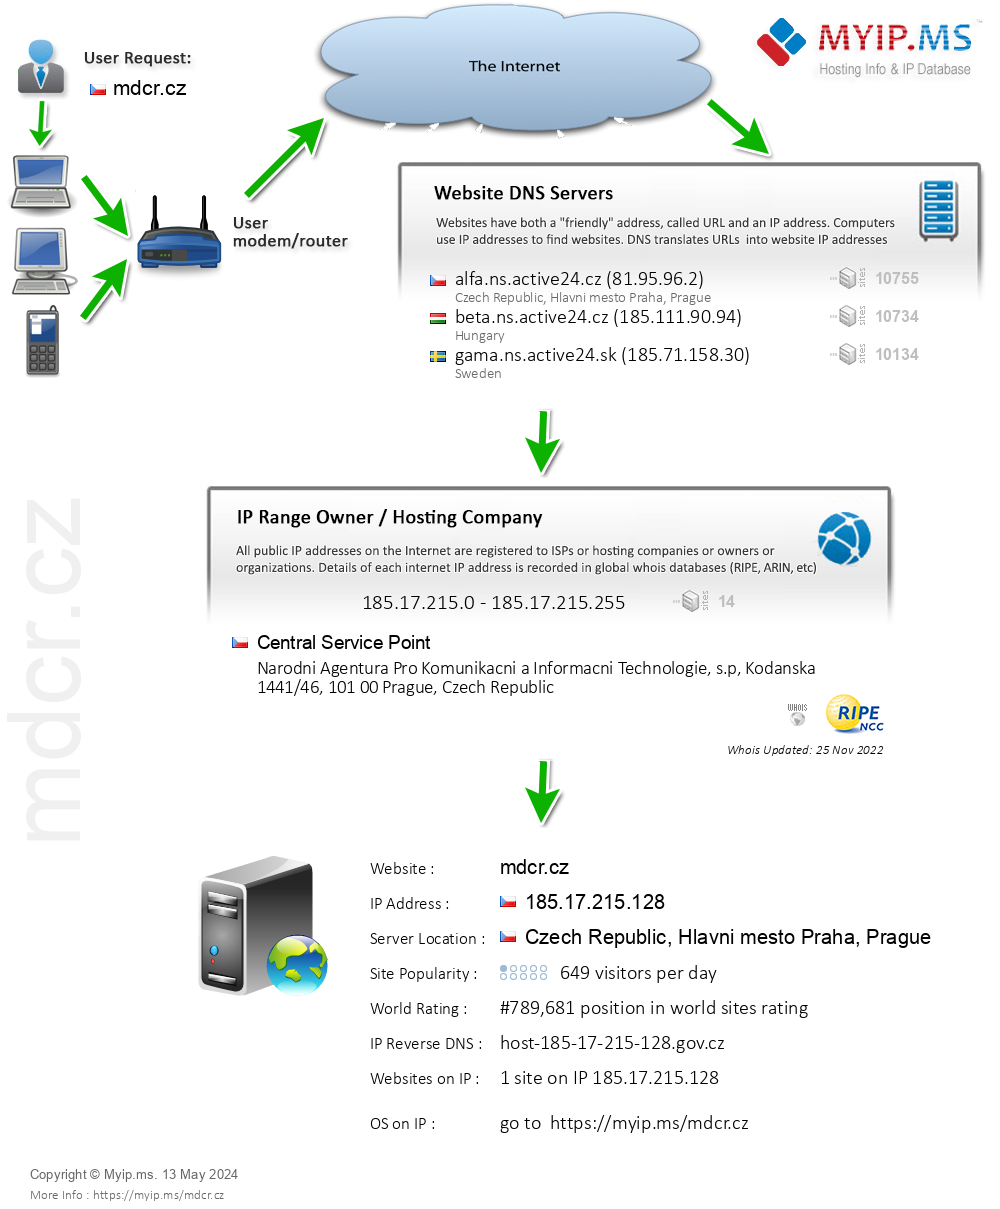 Mdcr.cz - Website Hosting Visual IP Diagram